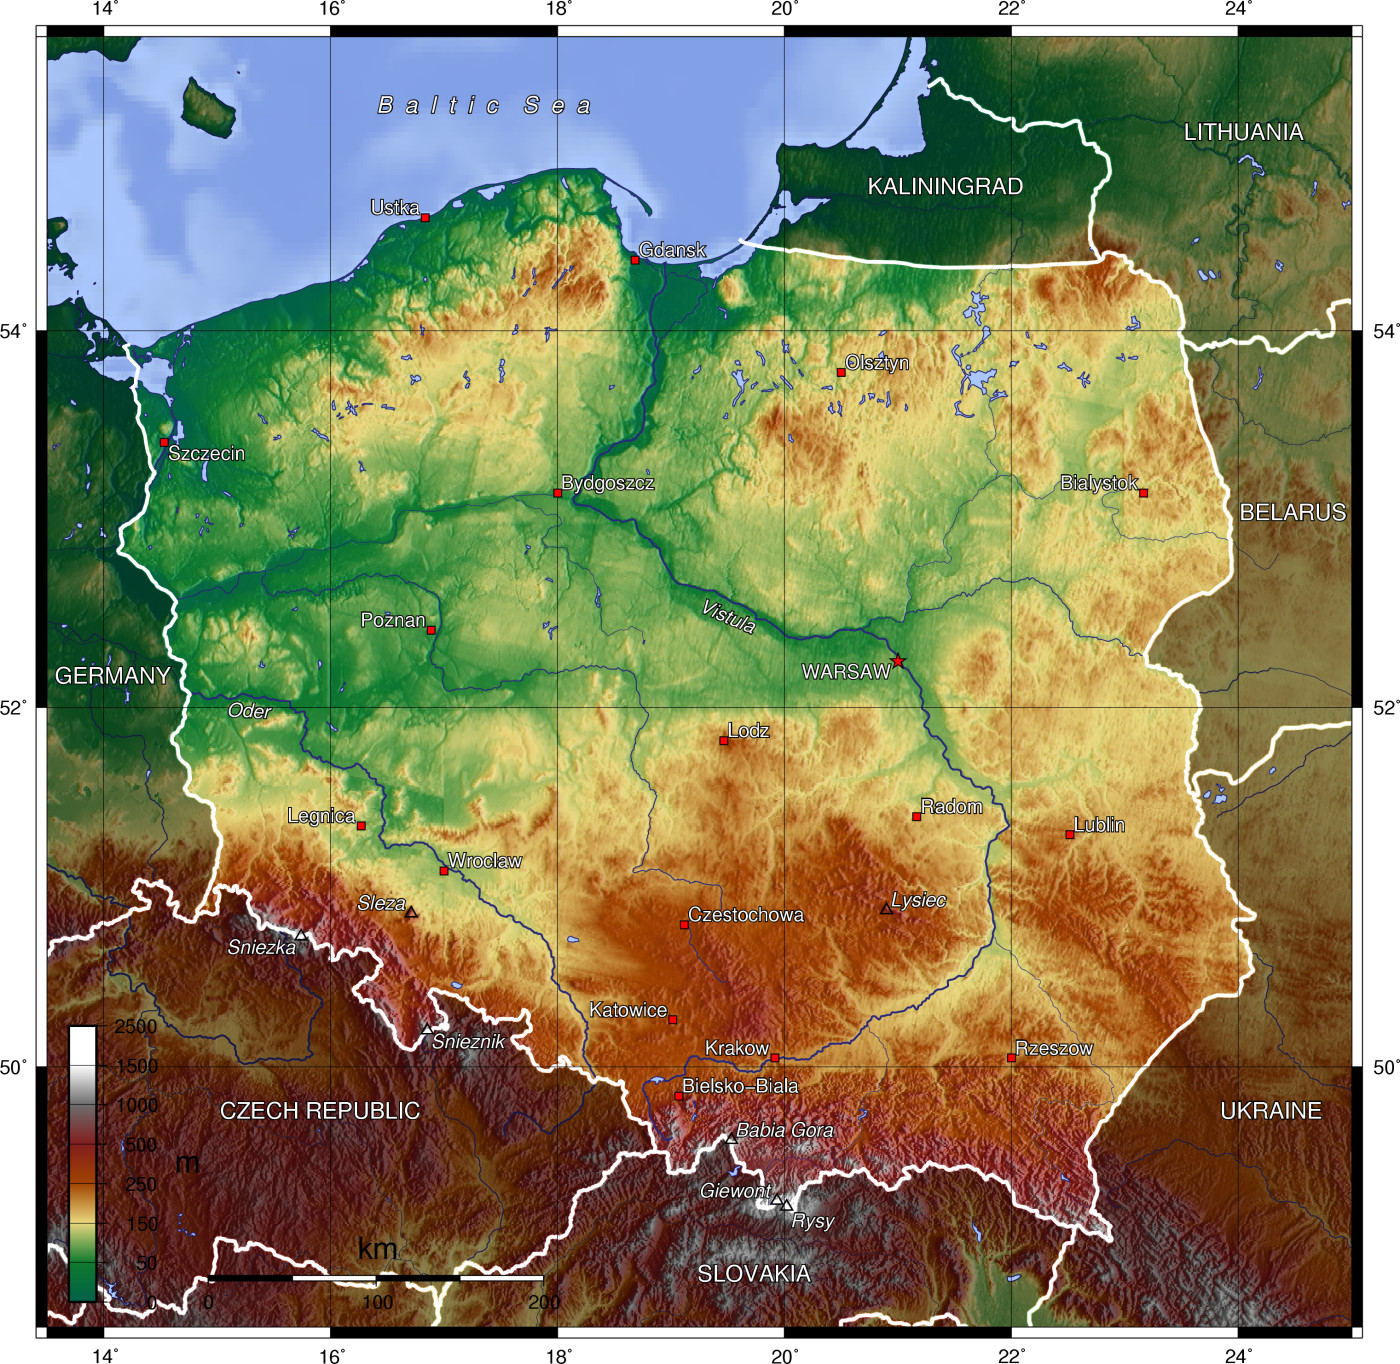 File:Mapa da Europa c.500 (com legenda).png - Wikipedia